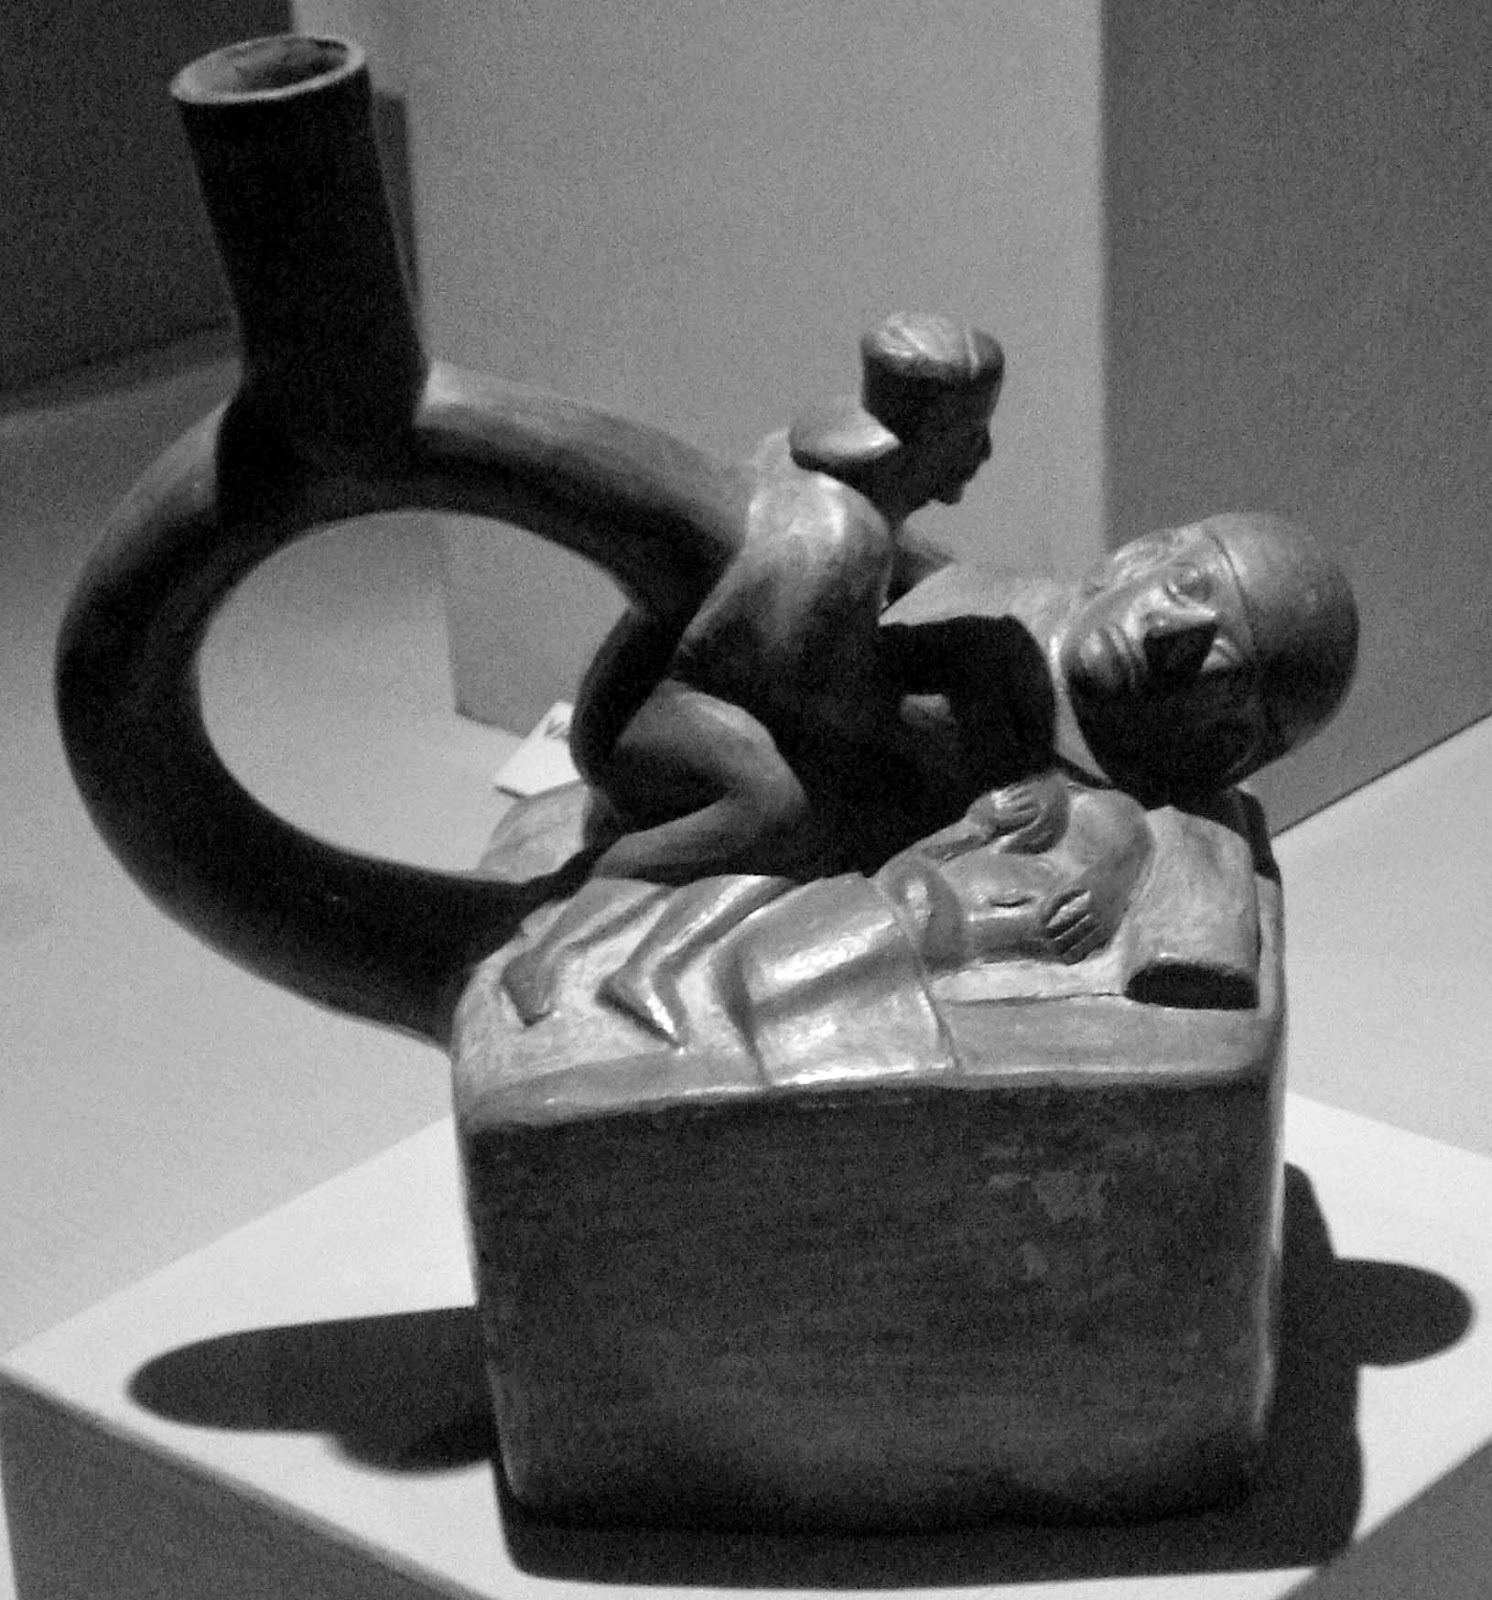 Una cerámica mochica de una pareja teniendo relaciones  sexuales con su hijo al lado expuesta en el museo Mali  de Lima, Perú. Amplía la imagen para ver los detalles.